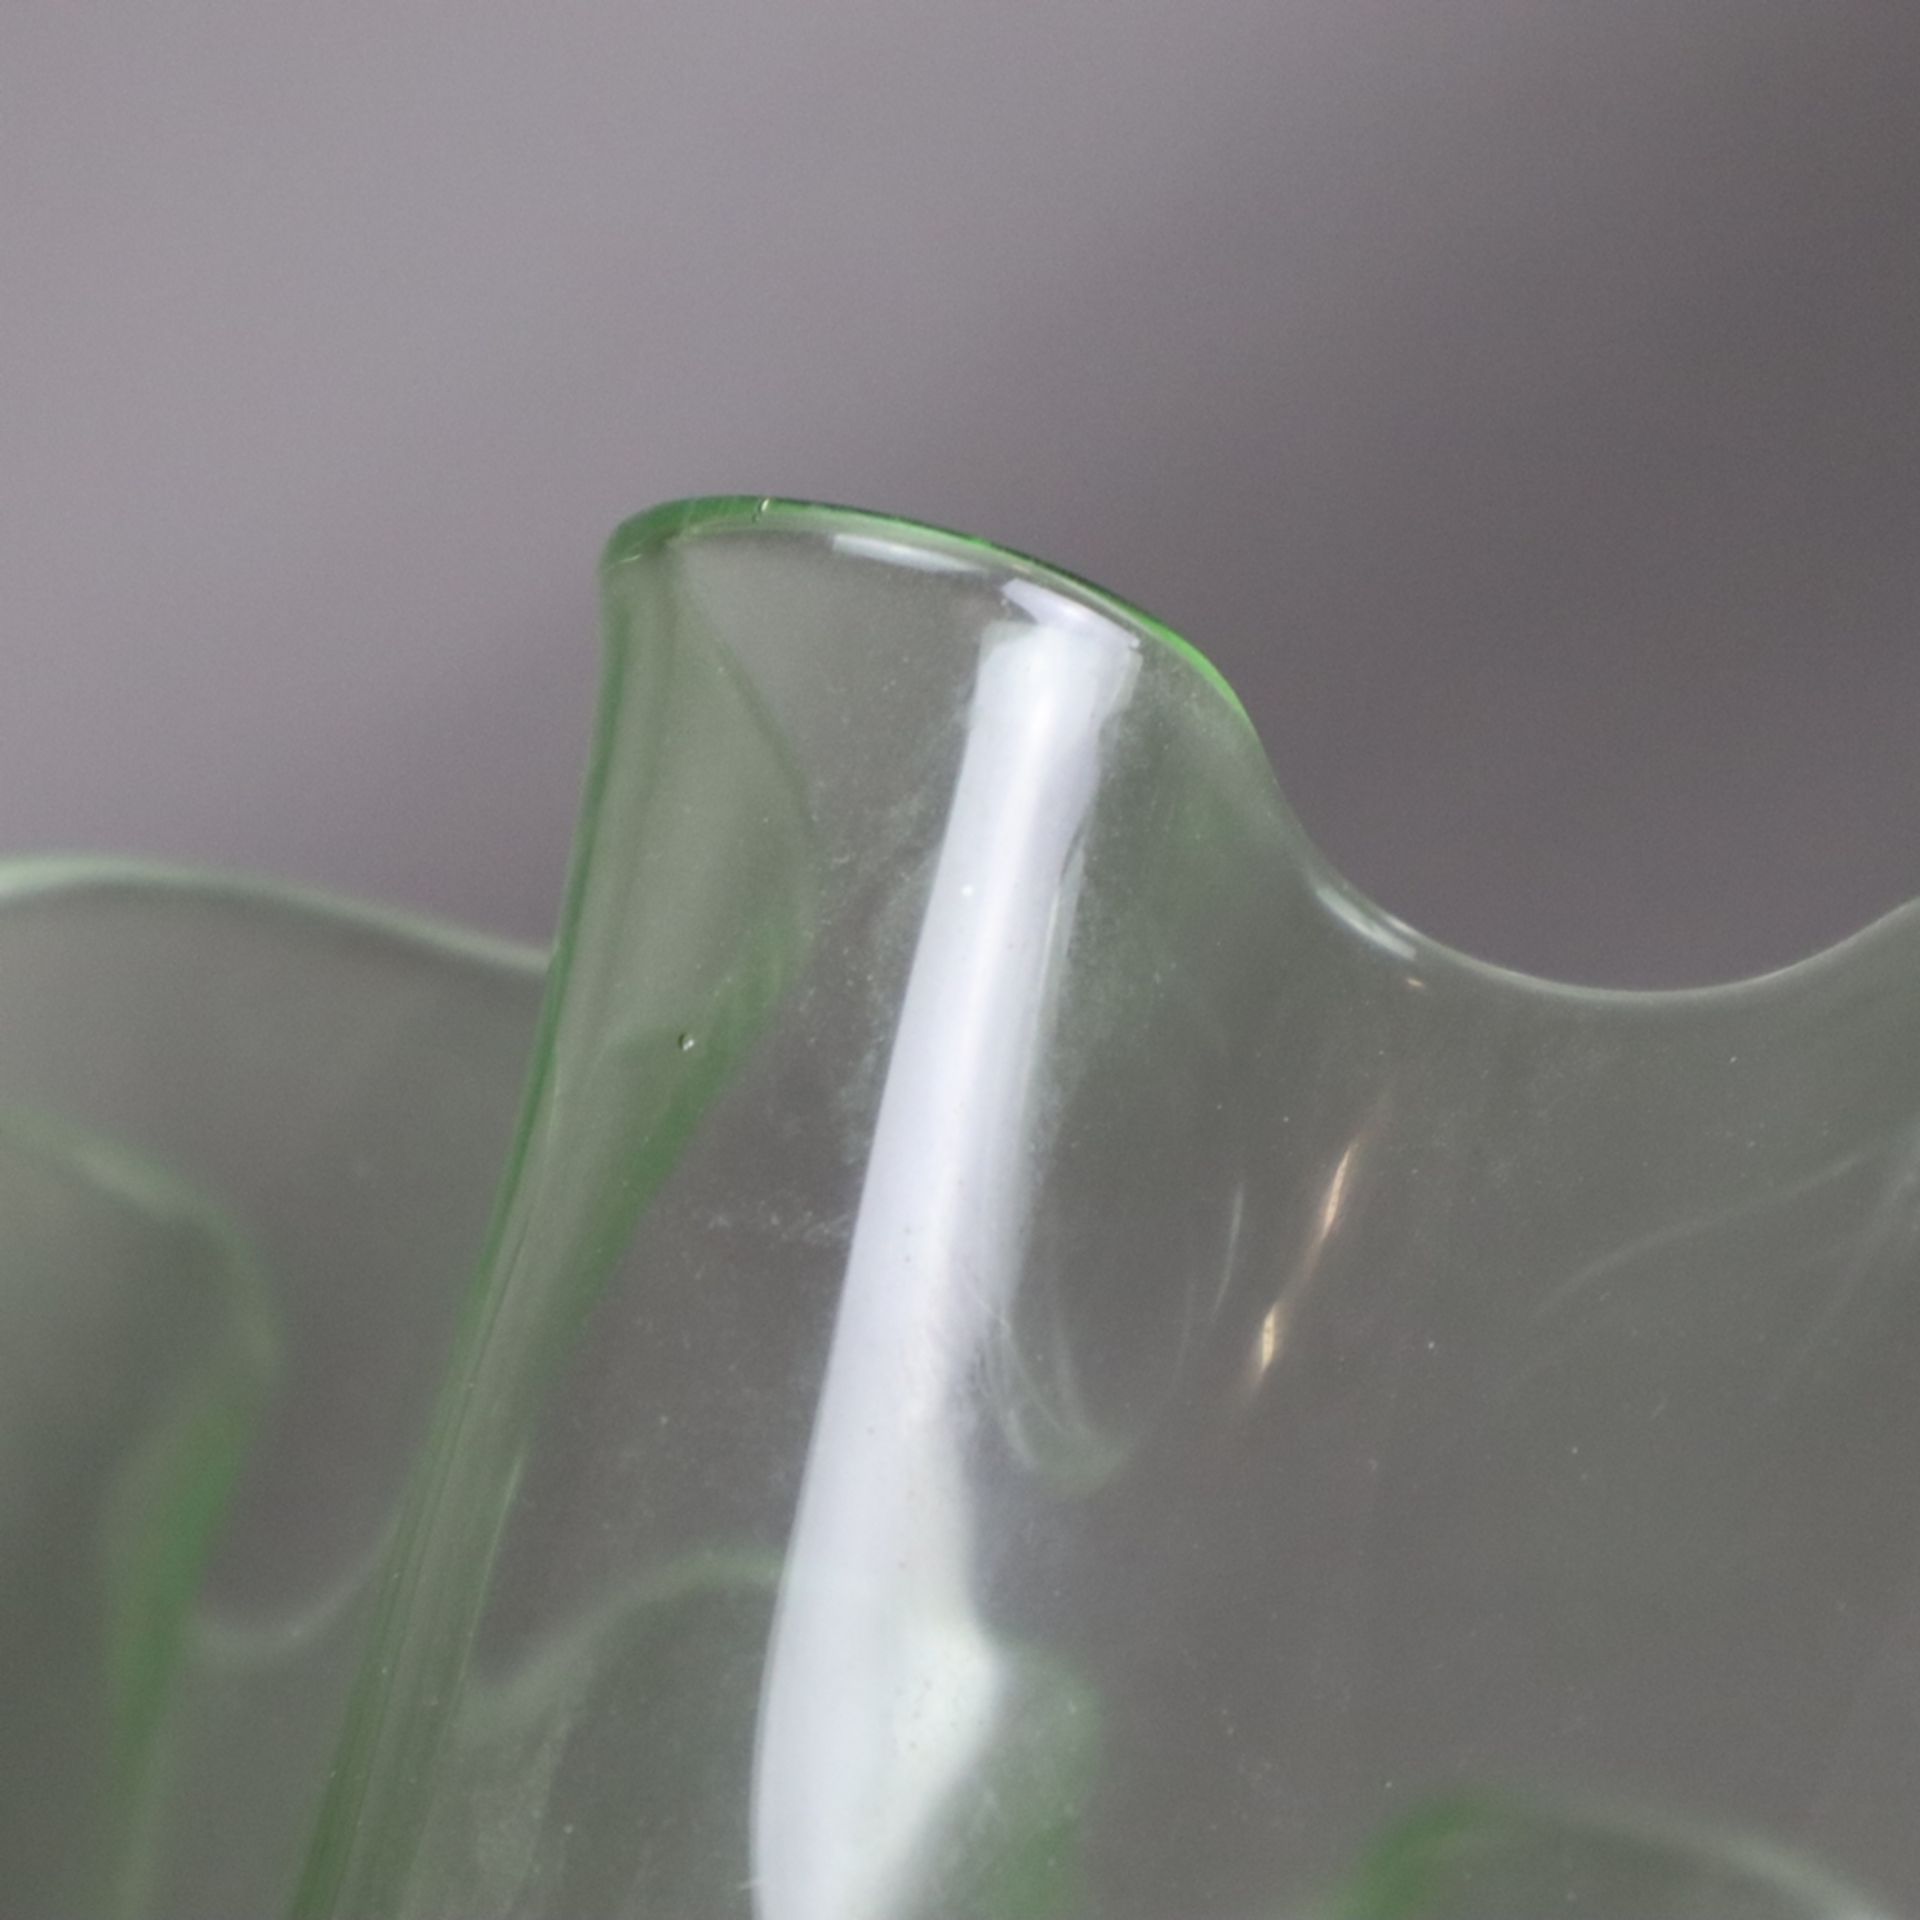 Ziervase in "Fazzoletto"- Form - Taschentuchvase, grünes Glas, mehrfach gefaltete Wandung, Boden - Bild 7 aus 7